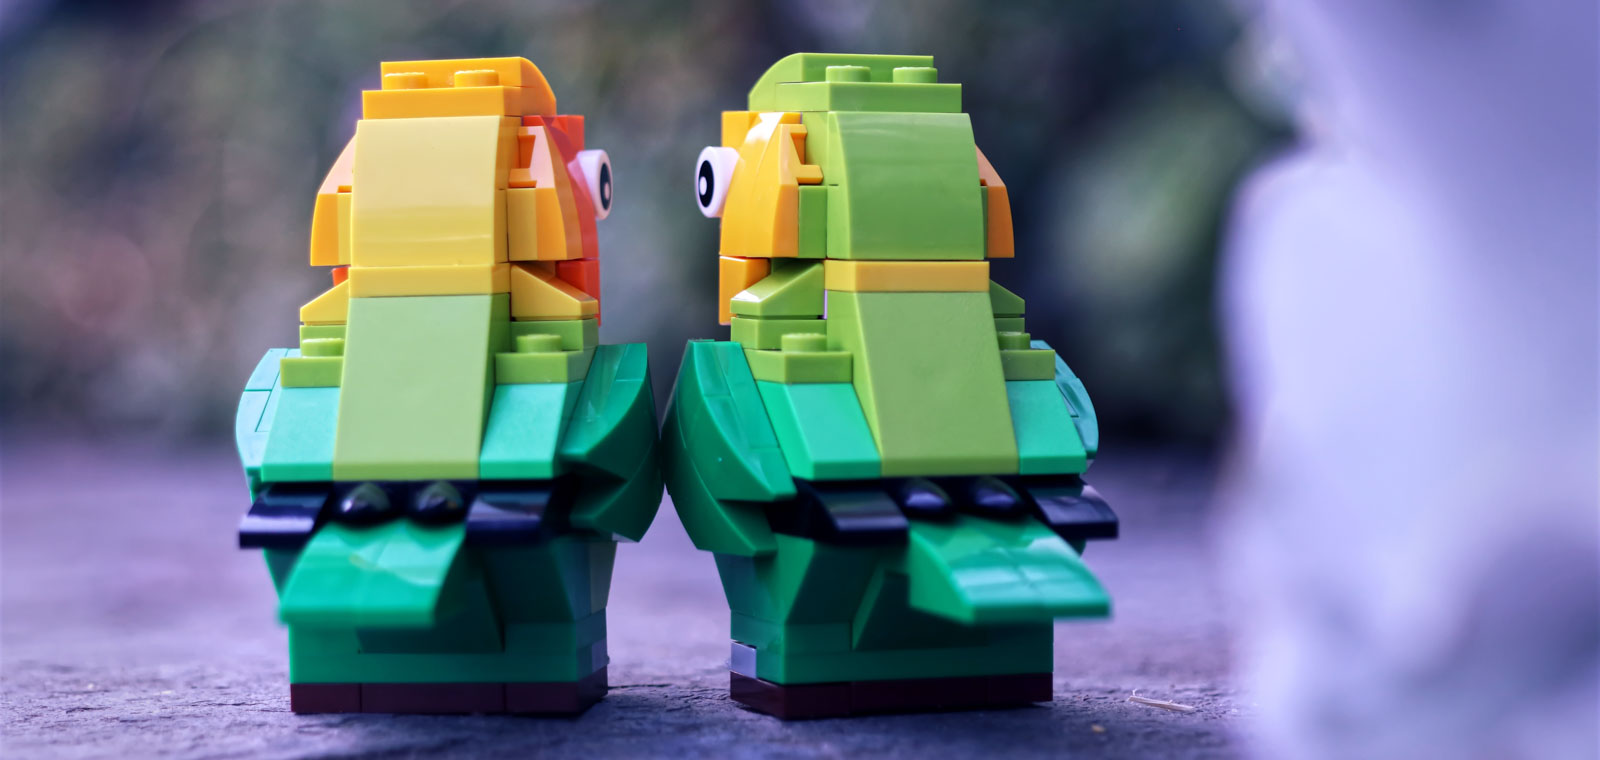 LEGO brick-built lovebirds from 40522 set